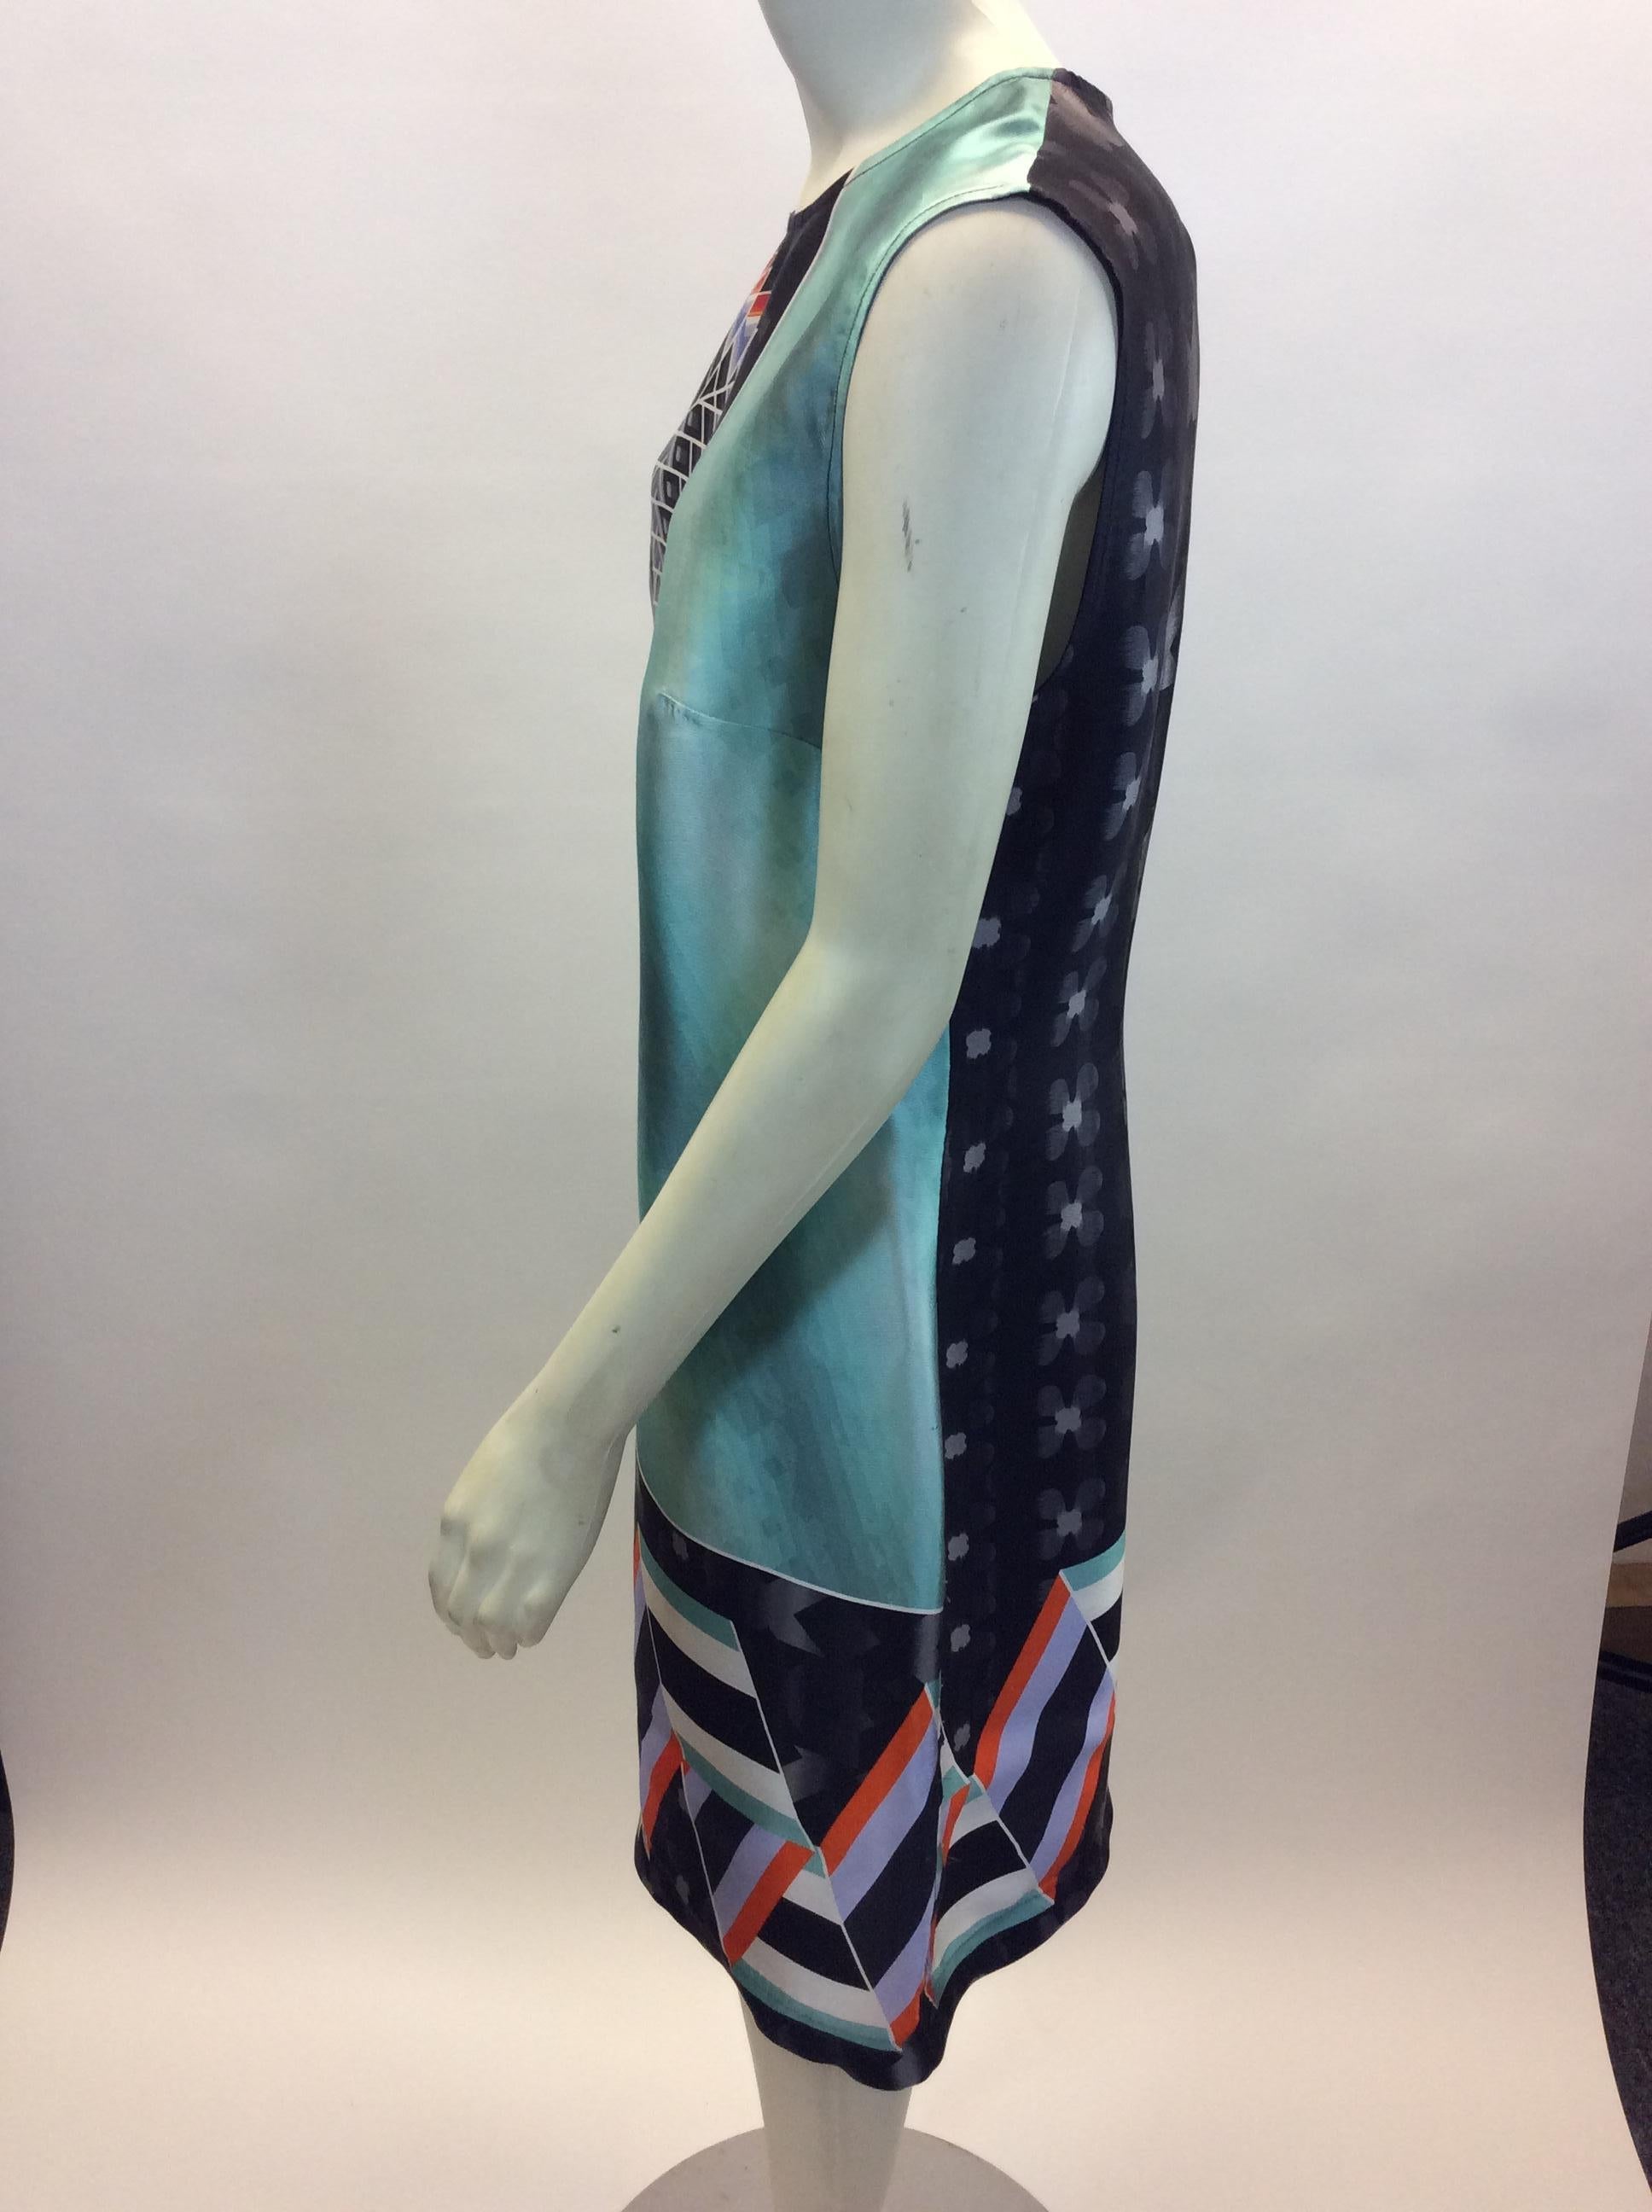 Peter Pilotto Multi-Color Print Silk Dress
$178
100% Silk
Size 8
Length 37